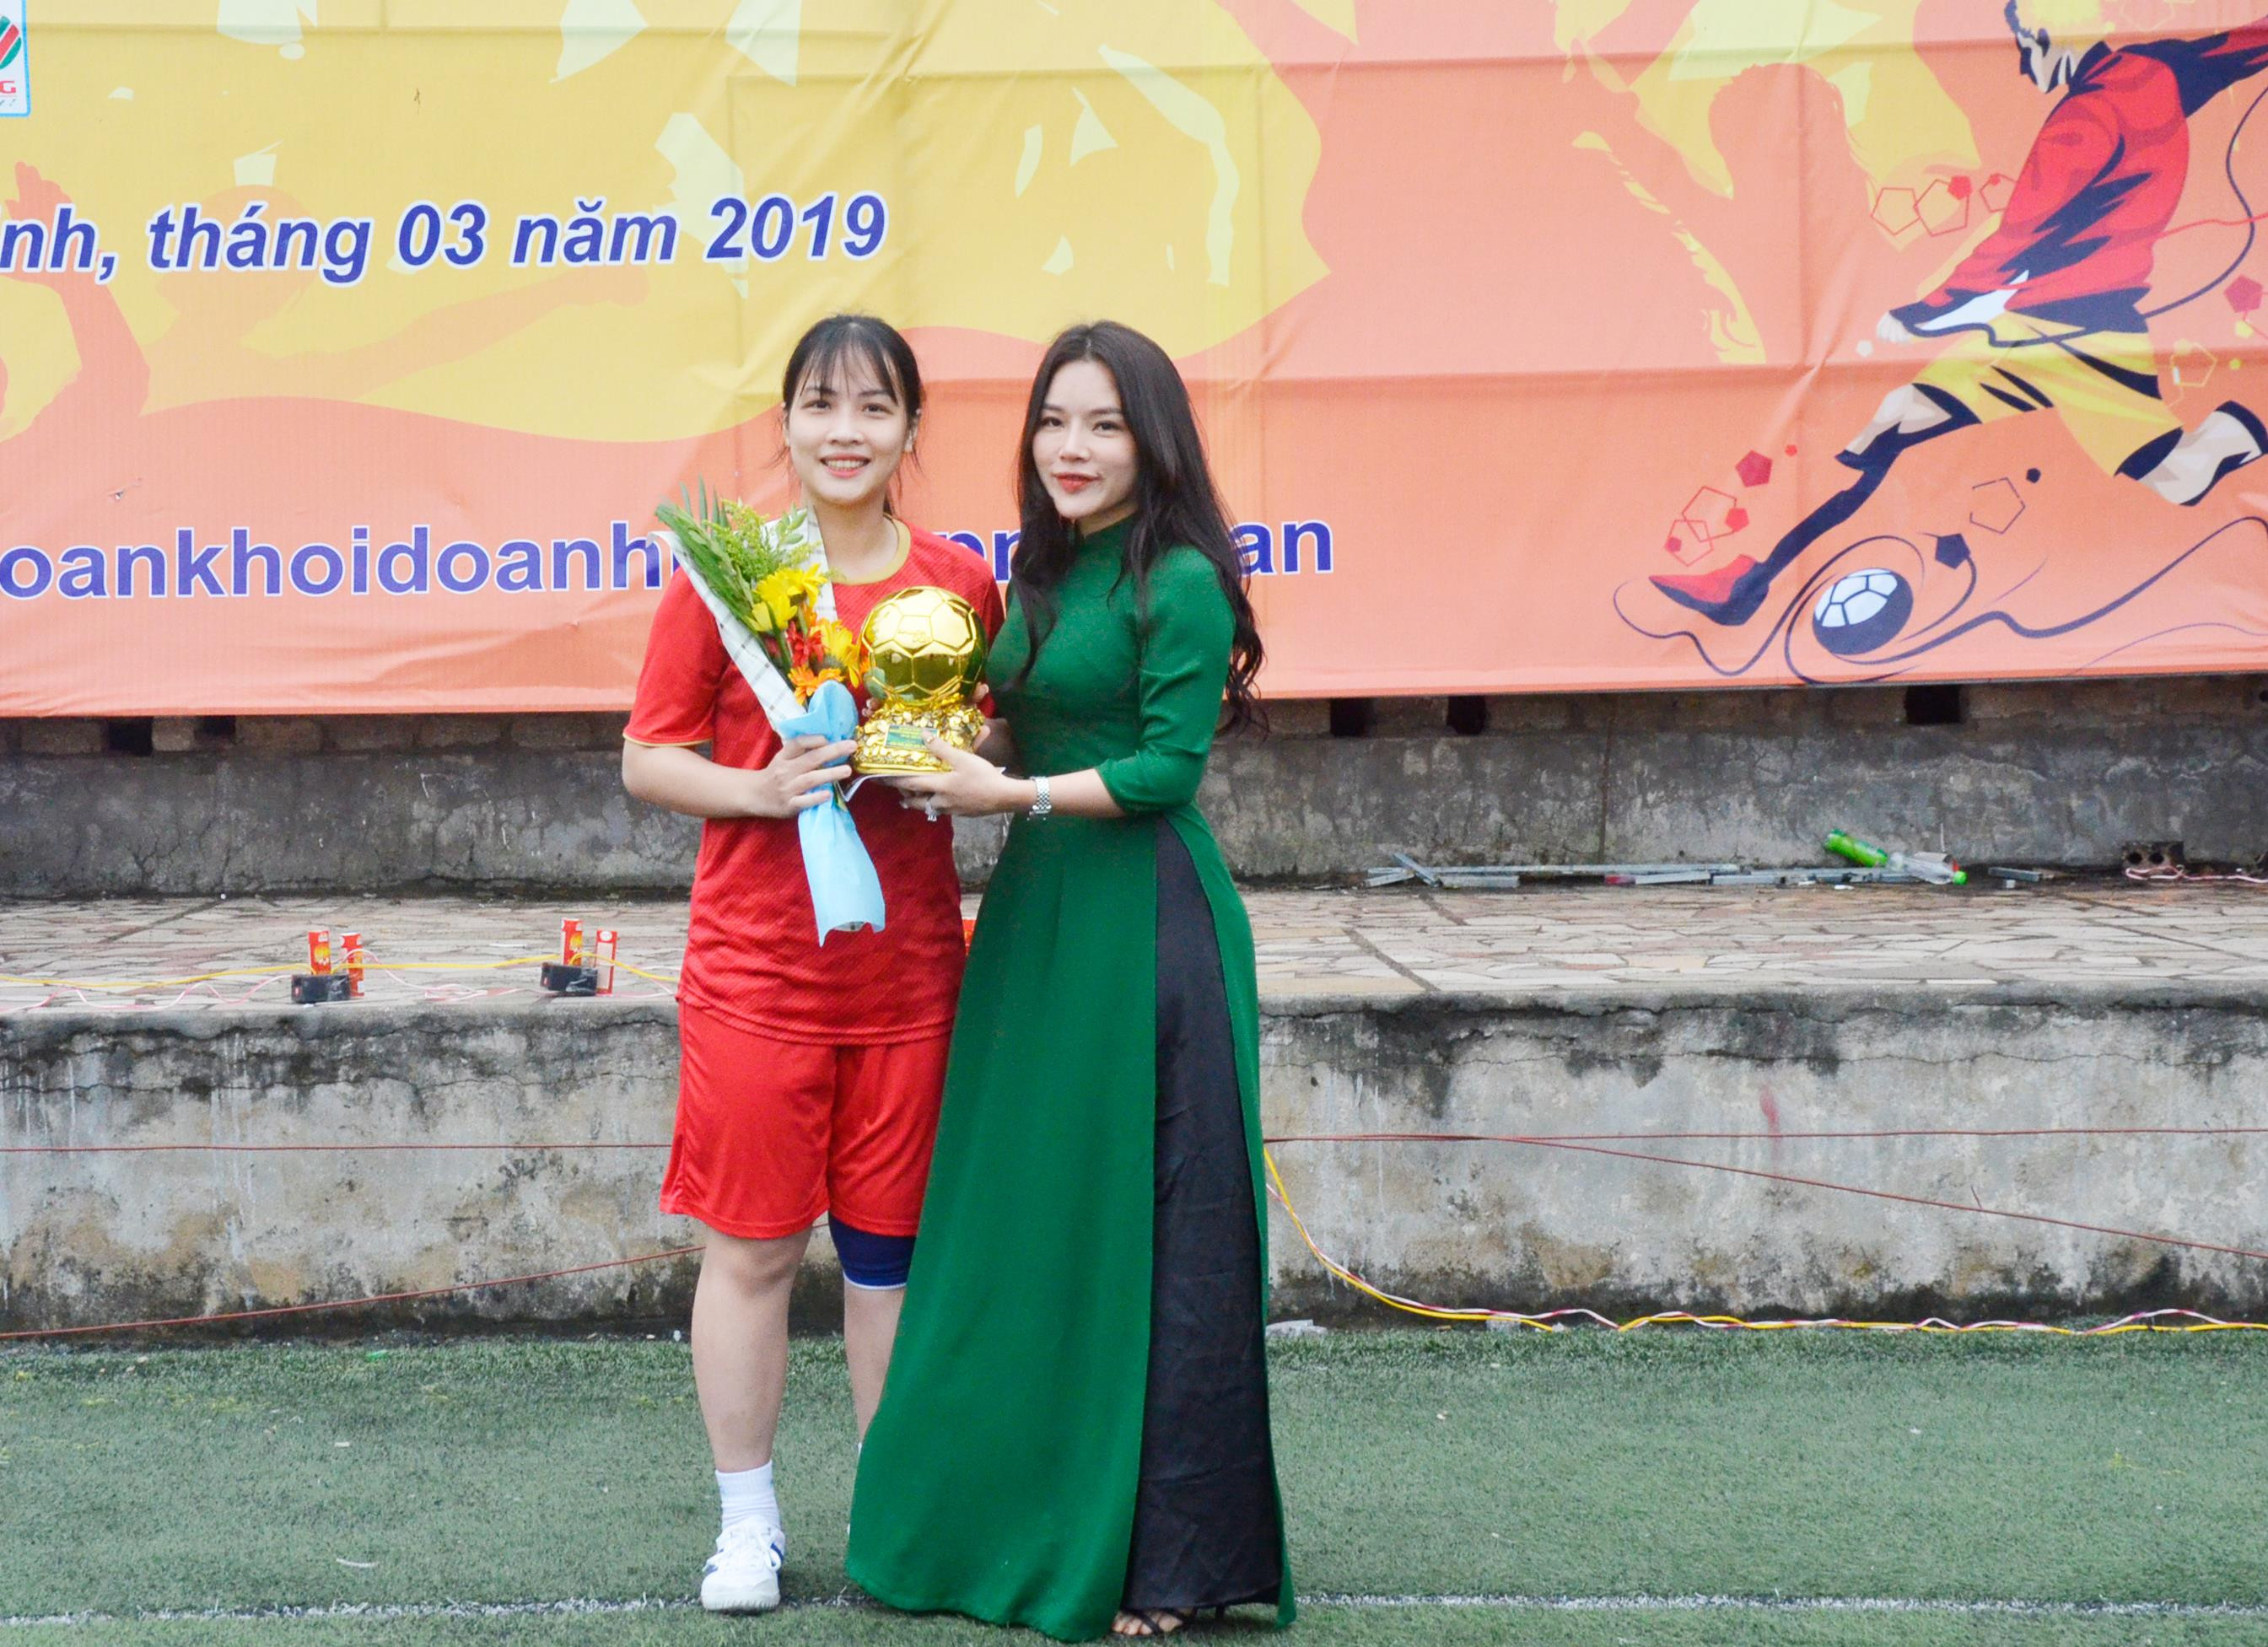 Trao giải cầu thủ nữ xuất sắc nhất giải đấu năm 2019. Ảnh: Thanh Lê